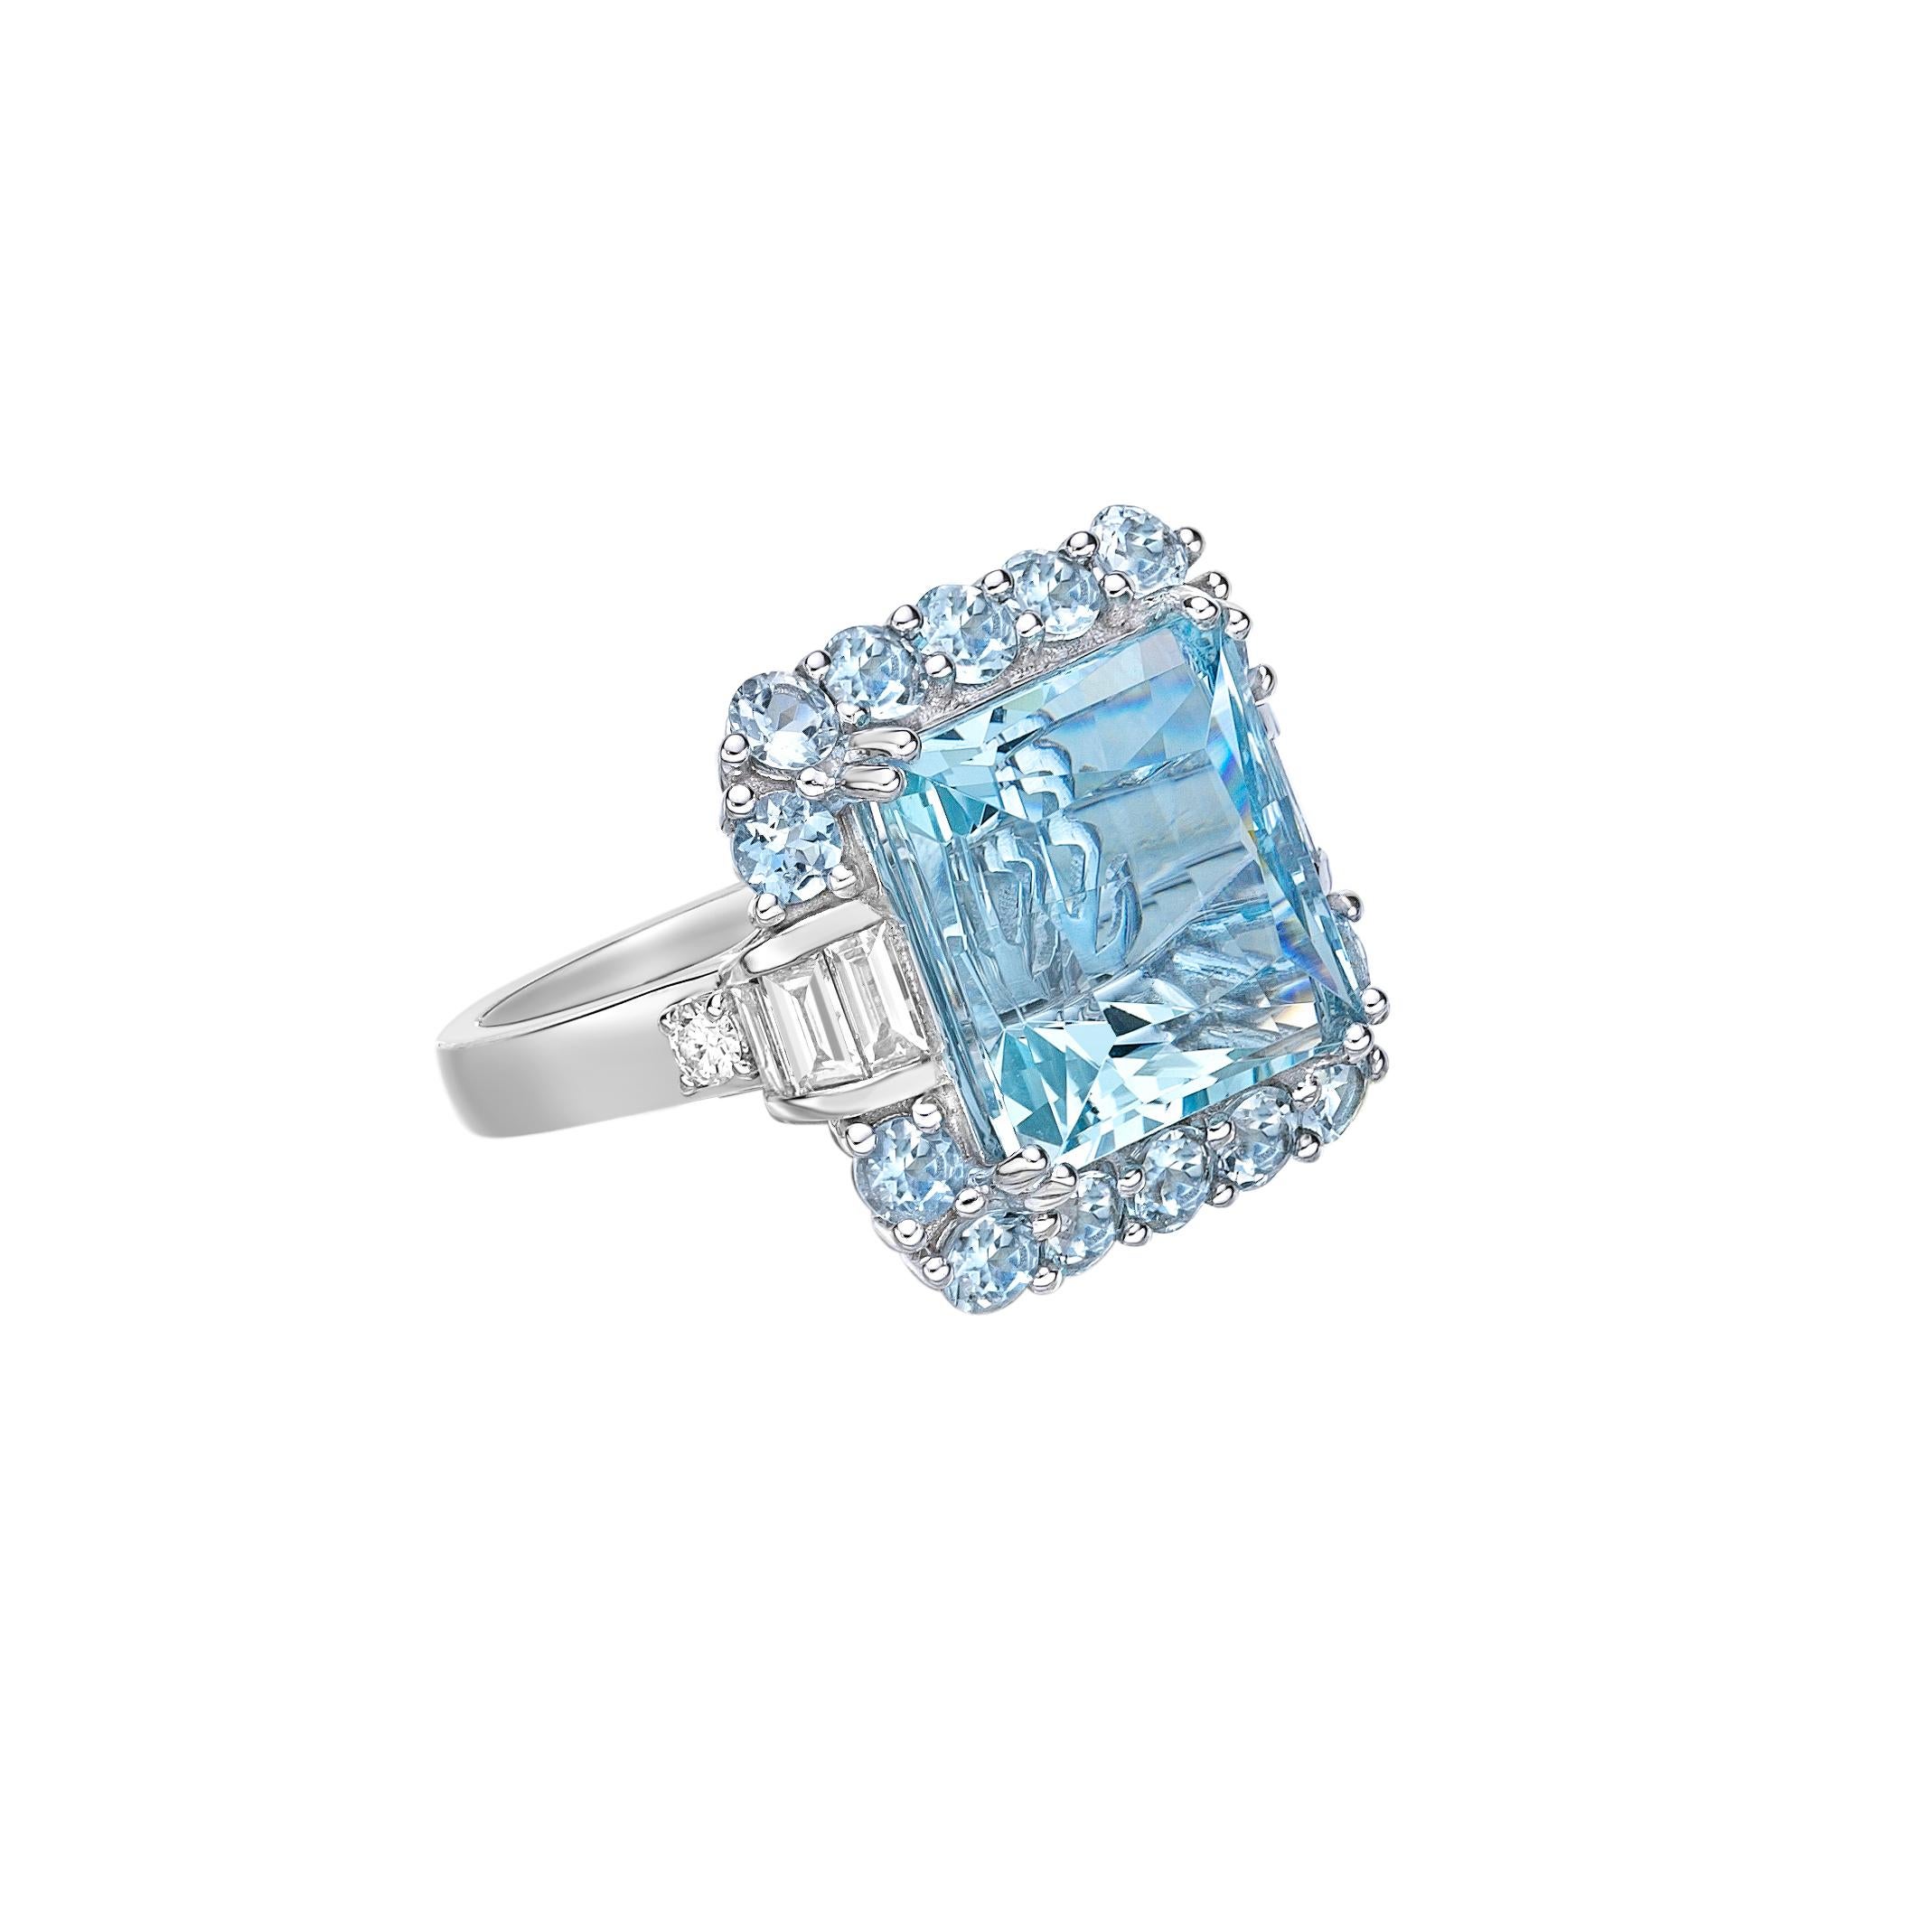 Diese Kollektion bietet eine Reihe von Aquamarinen mit einem eisblauen Farbton, der so cool ist, wie er nur sein kann! Die mit Diamanten besetzten Ringe sind aus Weißgold gefertigt und wirken klassisch und elegant. 

11,8 Karat Aquamarin-,